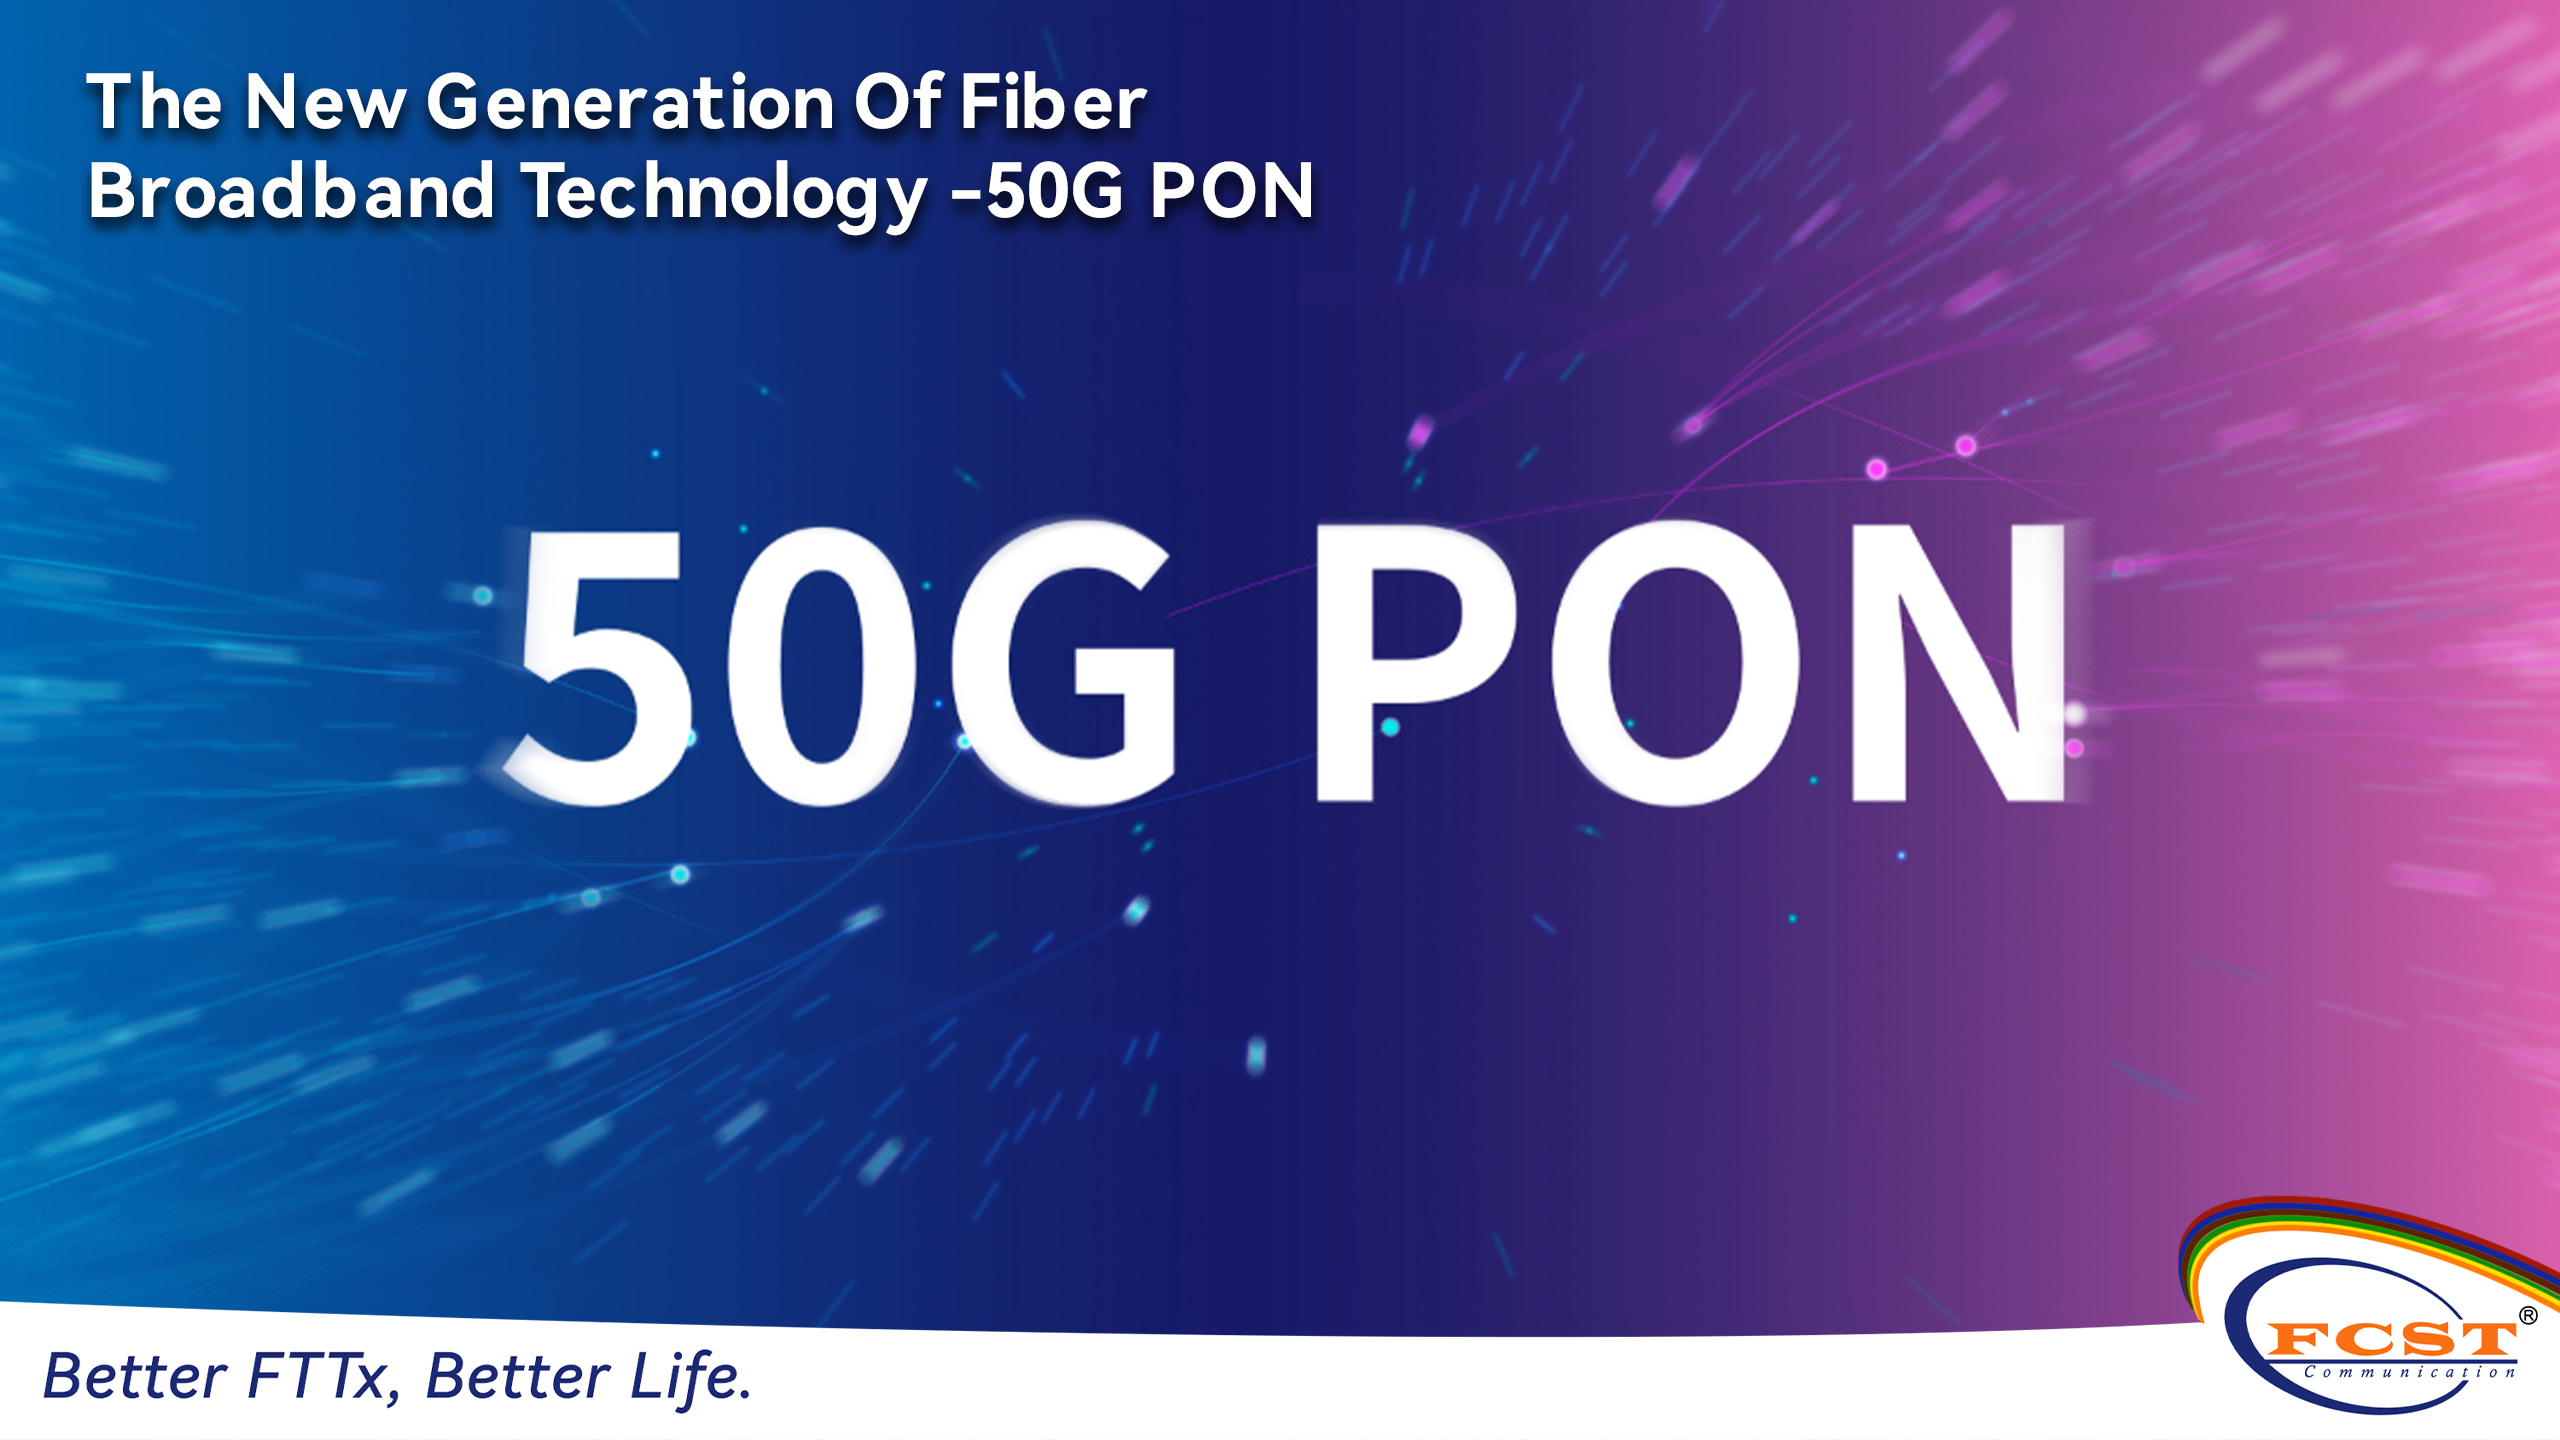 La nouvelle génération de technologie haut débit fibre - 50G PON